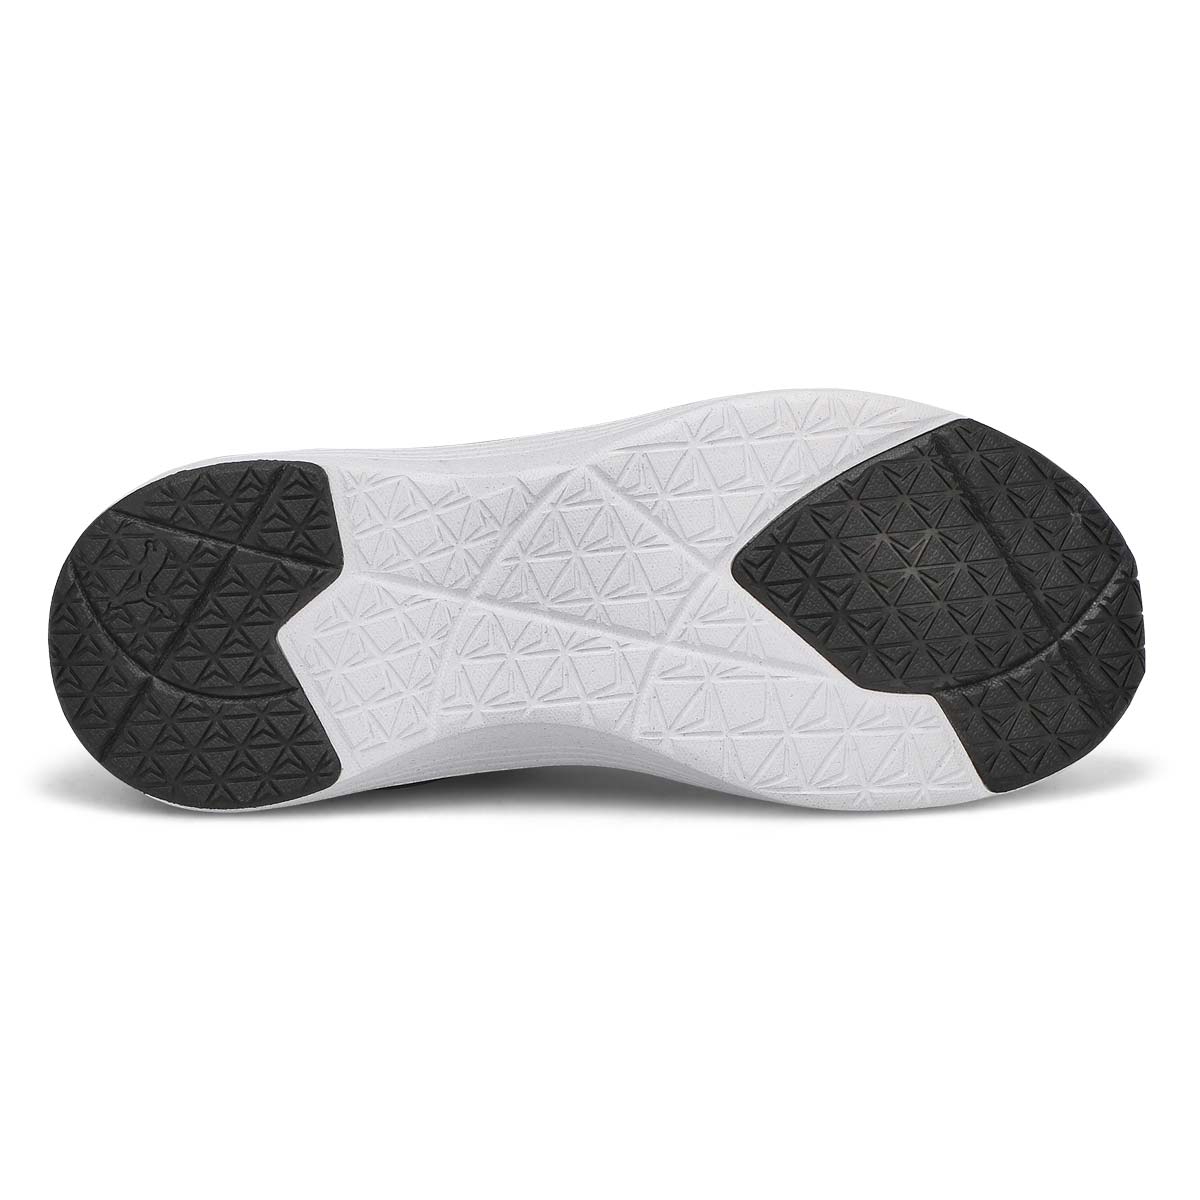 Women's Better Foam Prowl Slip On Sneaker - Black/White